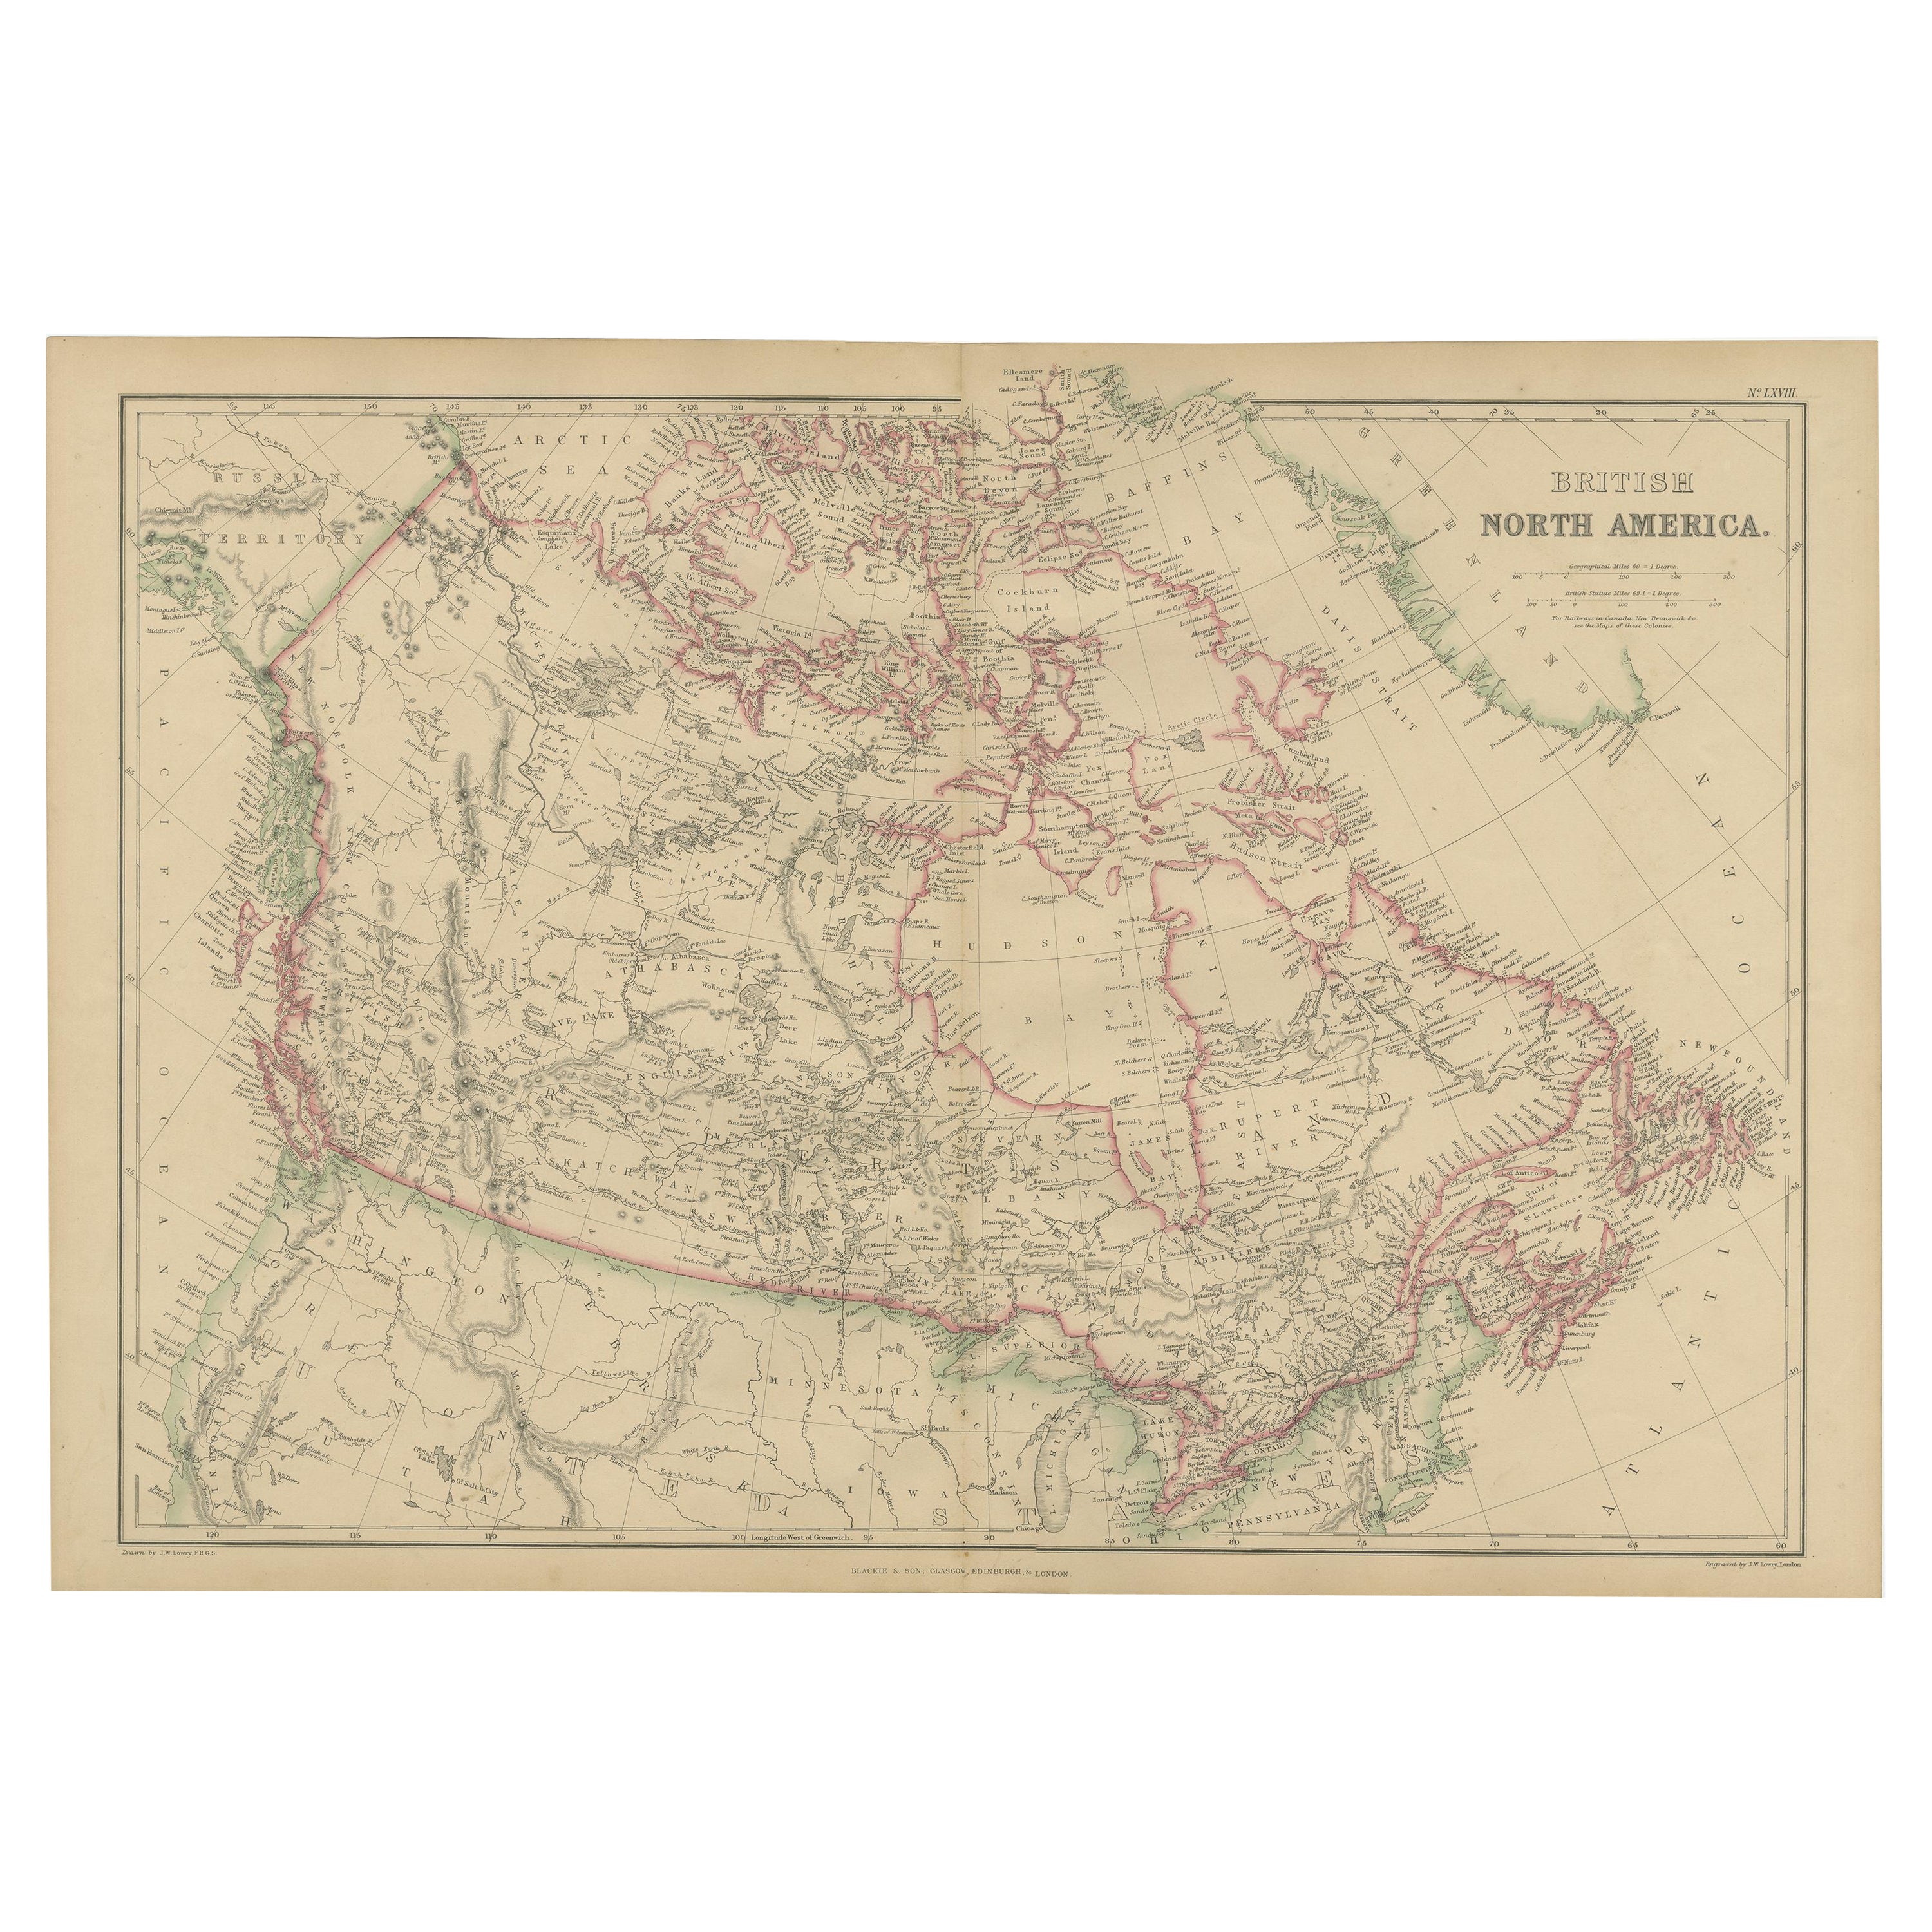 Carte ancienne d'Amérique du Nord britannique par W. G. Blackie, 1859